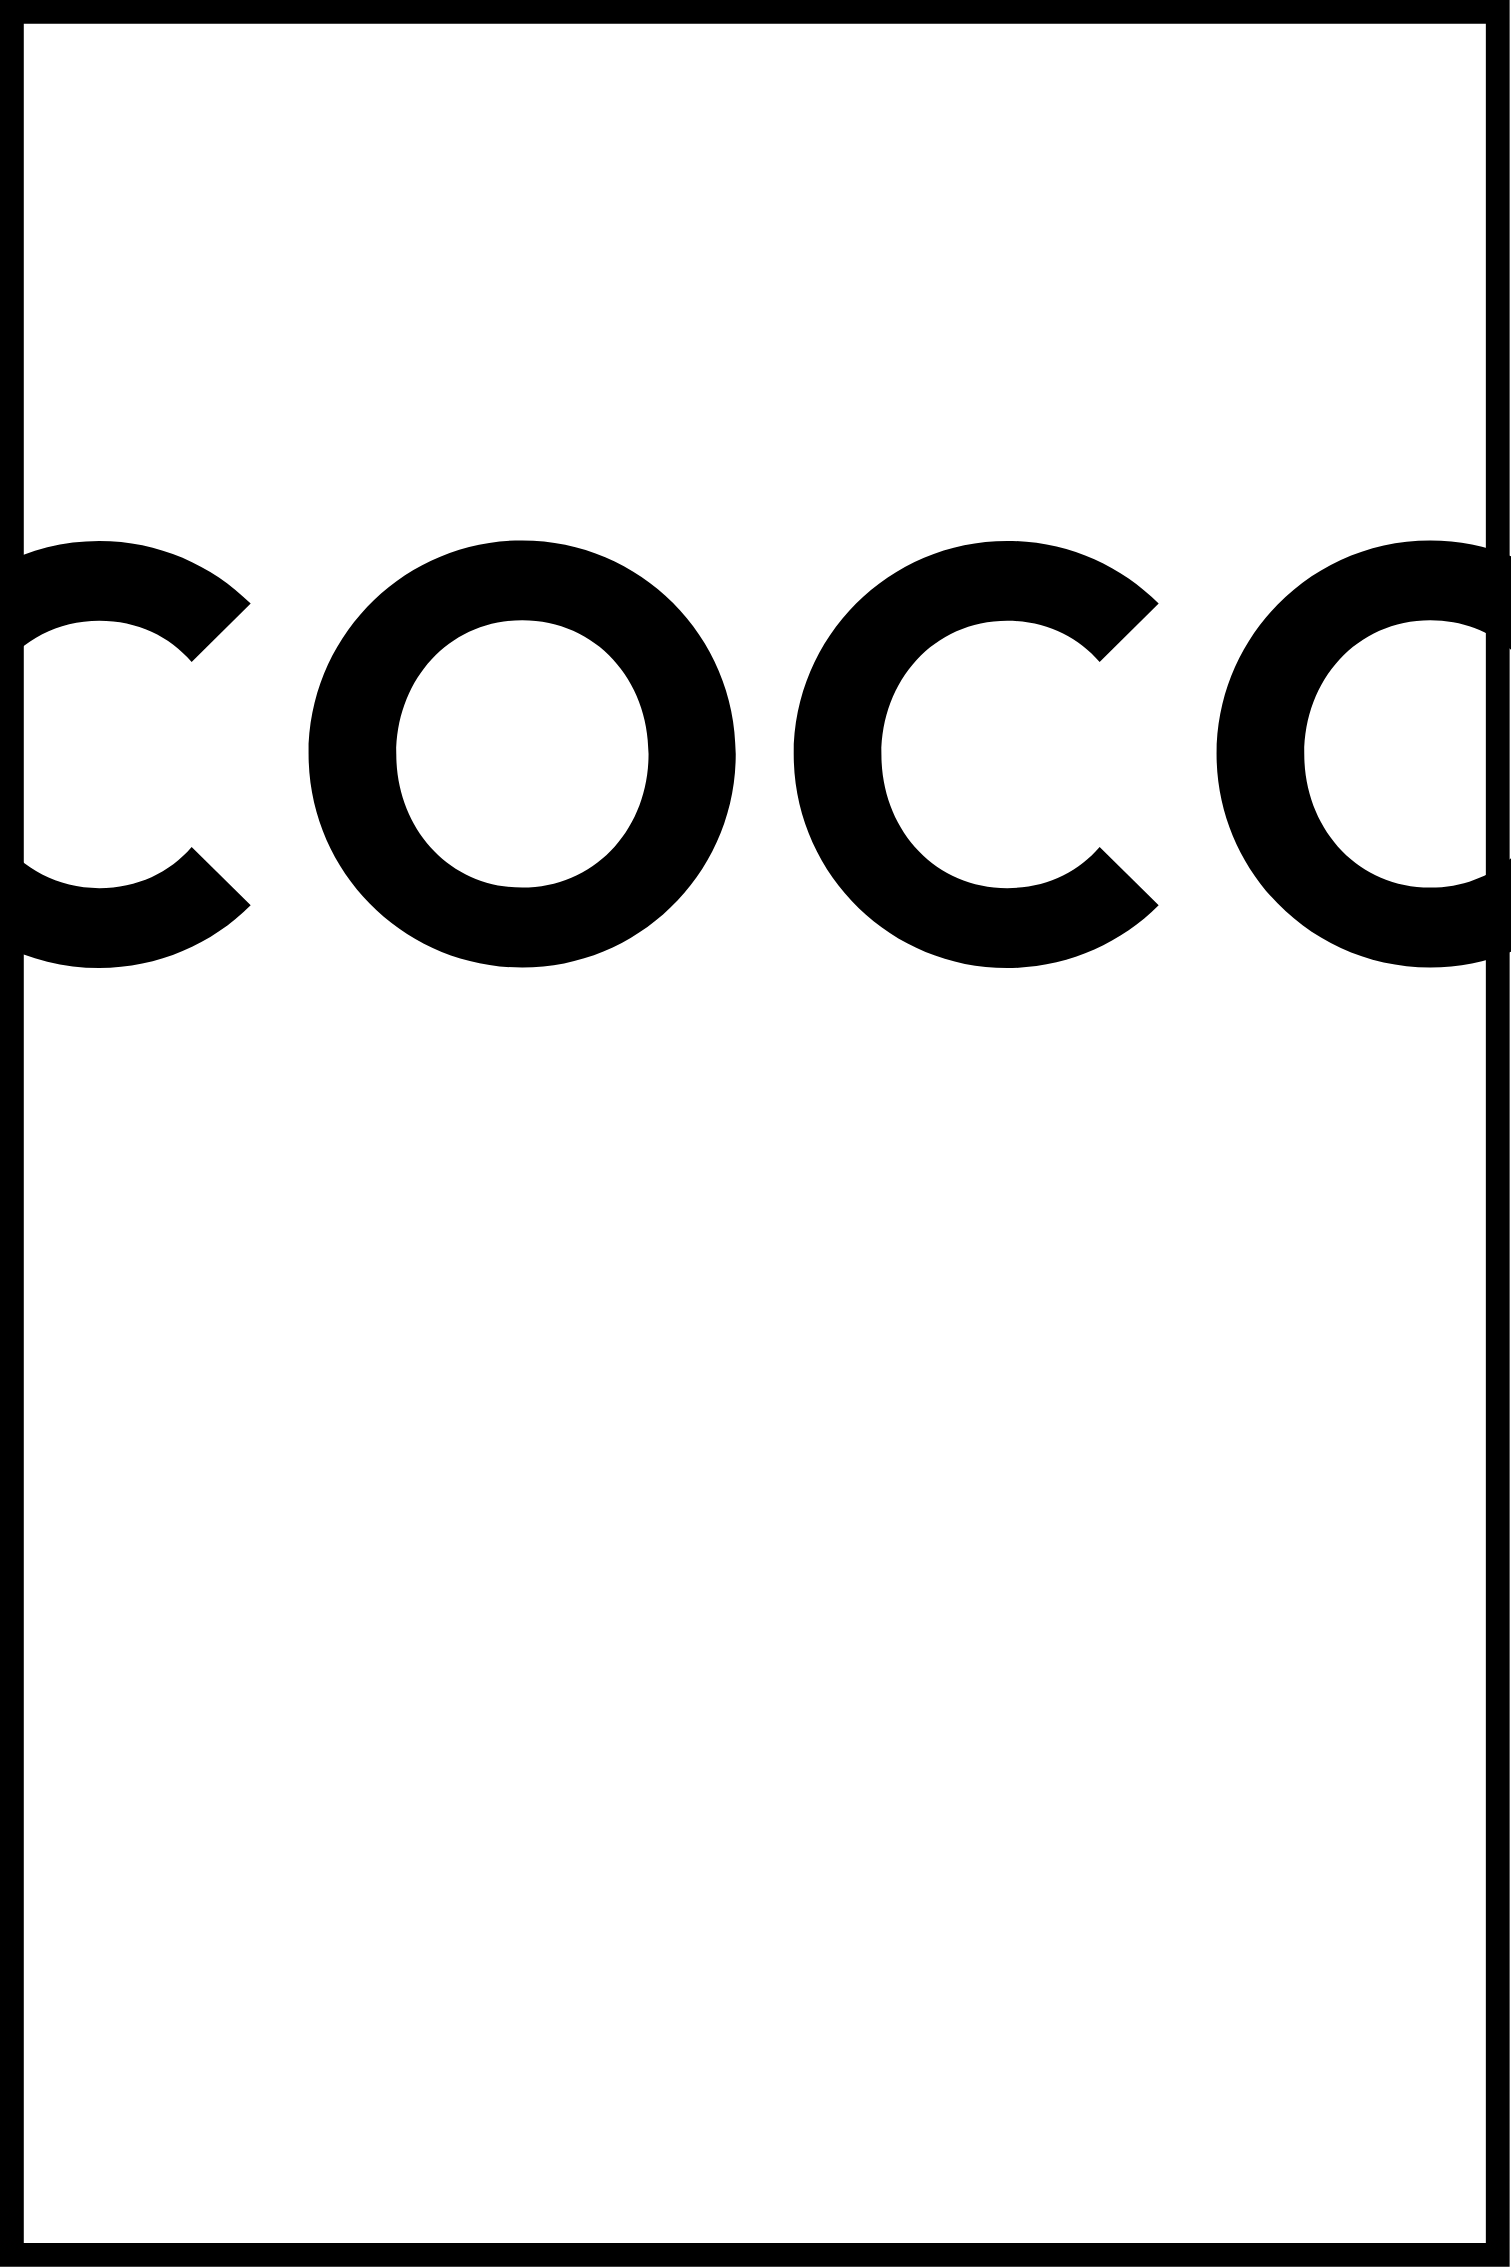 COCO plakat